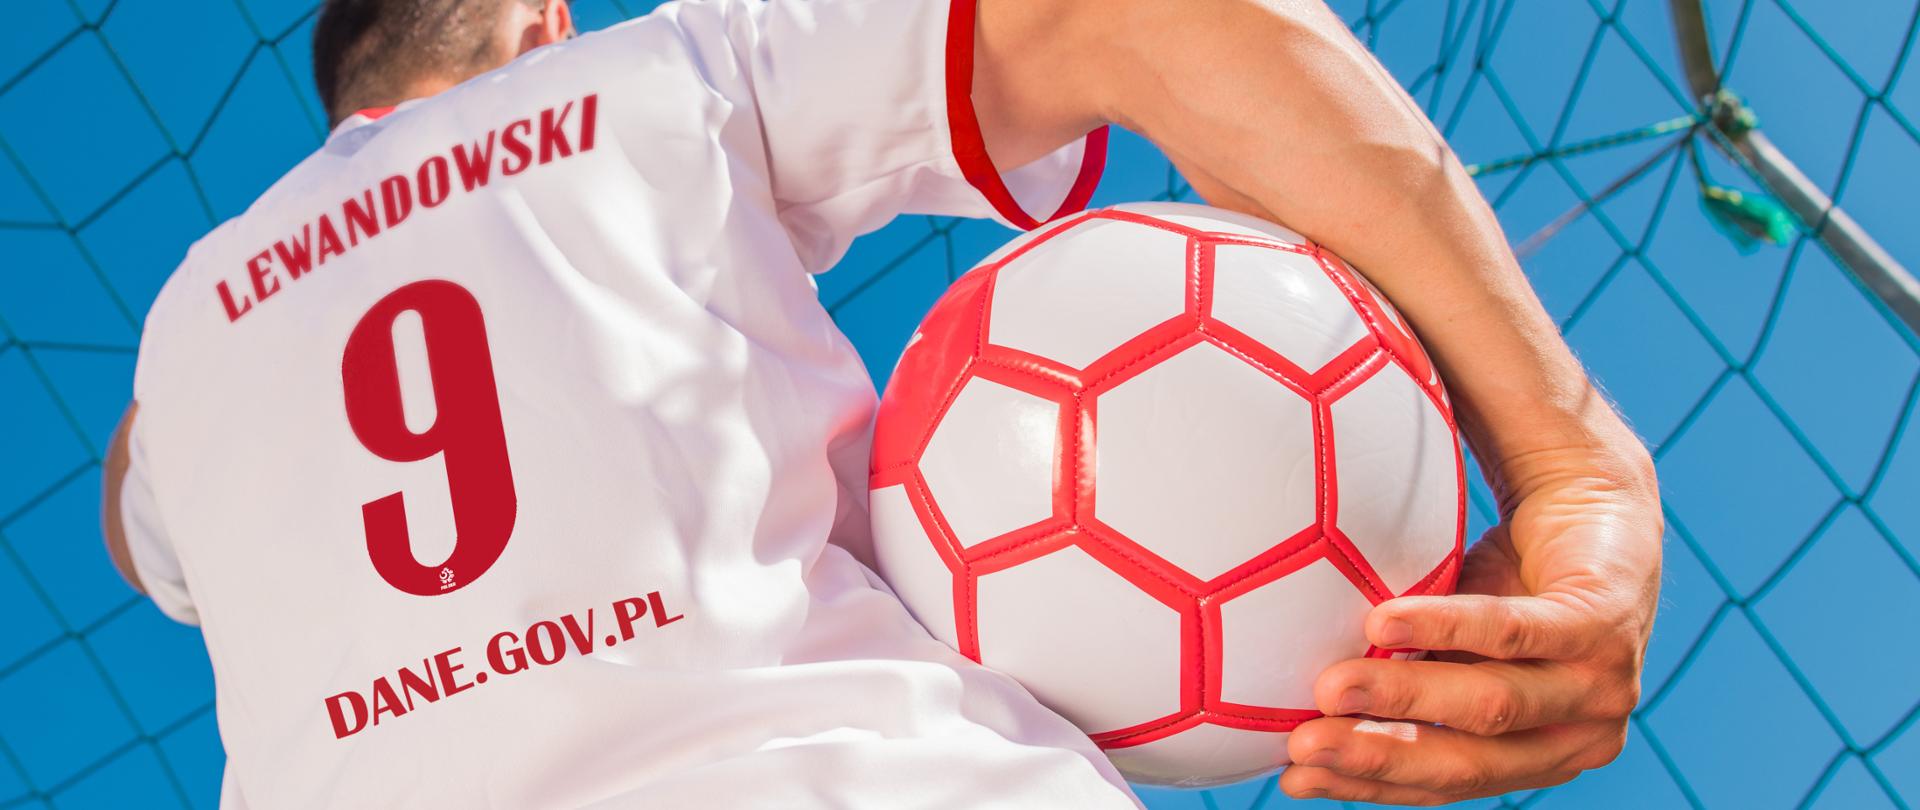 Zdjęcie pleców chłopaka w biało-czerwonej piłkarskiej koszulce, stoi na tle bramki, w prawym ręku trzyma piłkę. Na koszulce napis: Lewandowski, numer 9 i adres dane.gov.pl